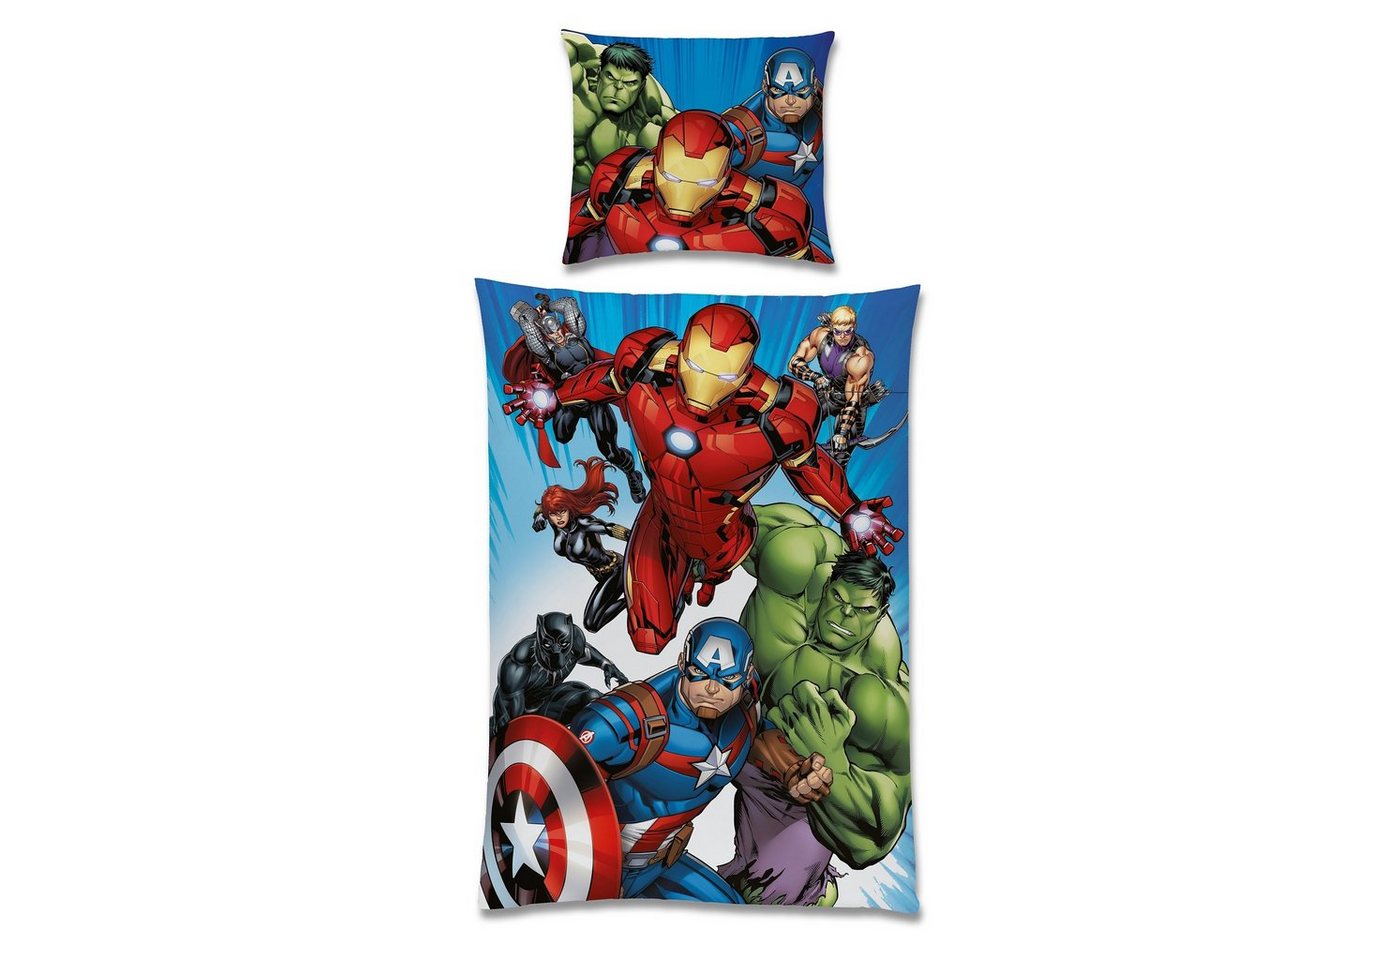 Kinderbettwäsche Marvel Avengers im Comic Stil 135x200 80x80cm aus 100% Baumwolle, Familando, Renforcé, 2 teilig, mit allen wichtigen Avengers von Familando